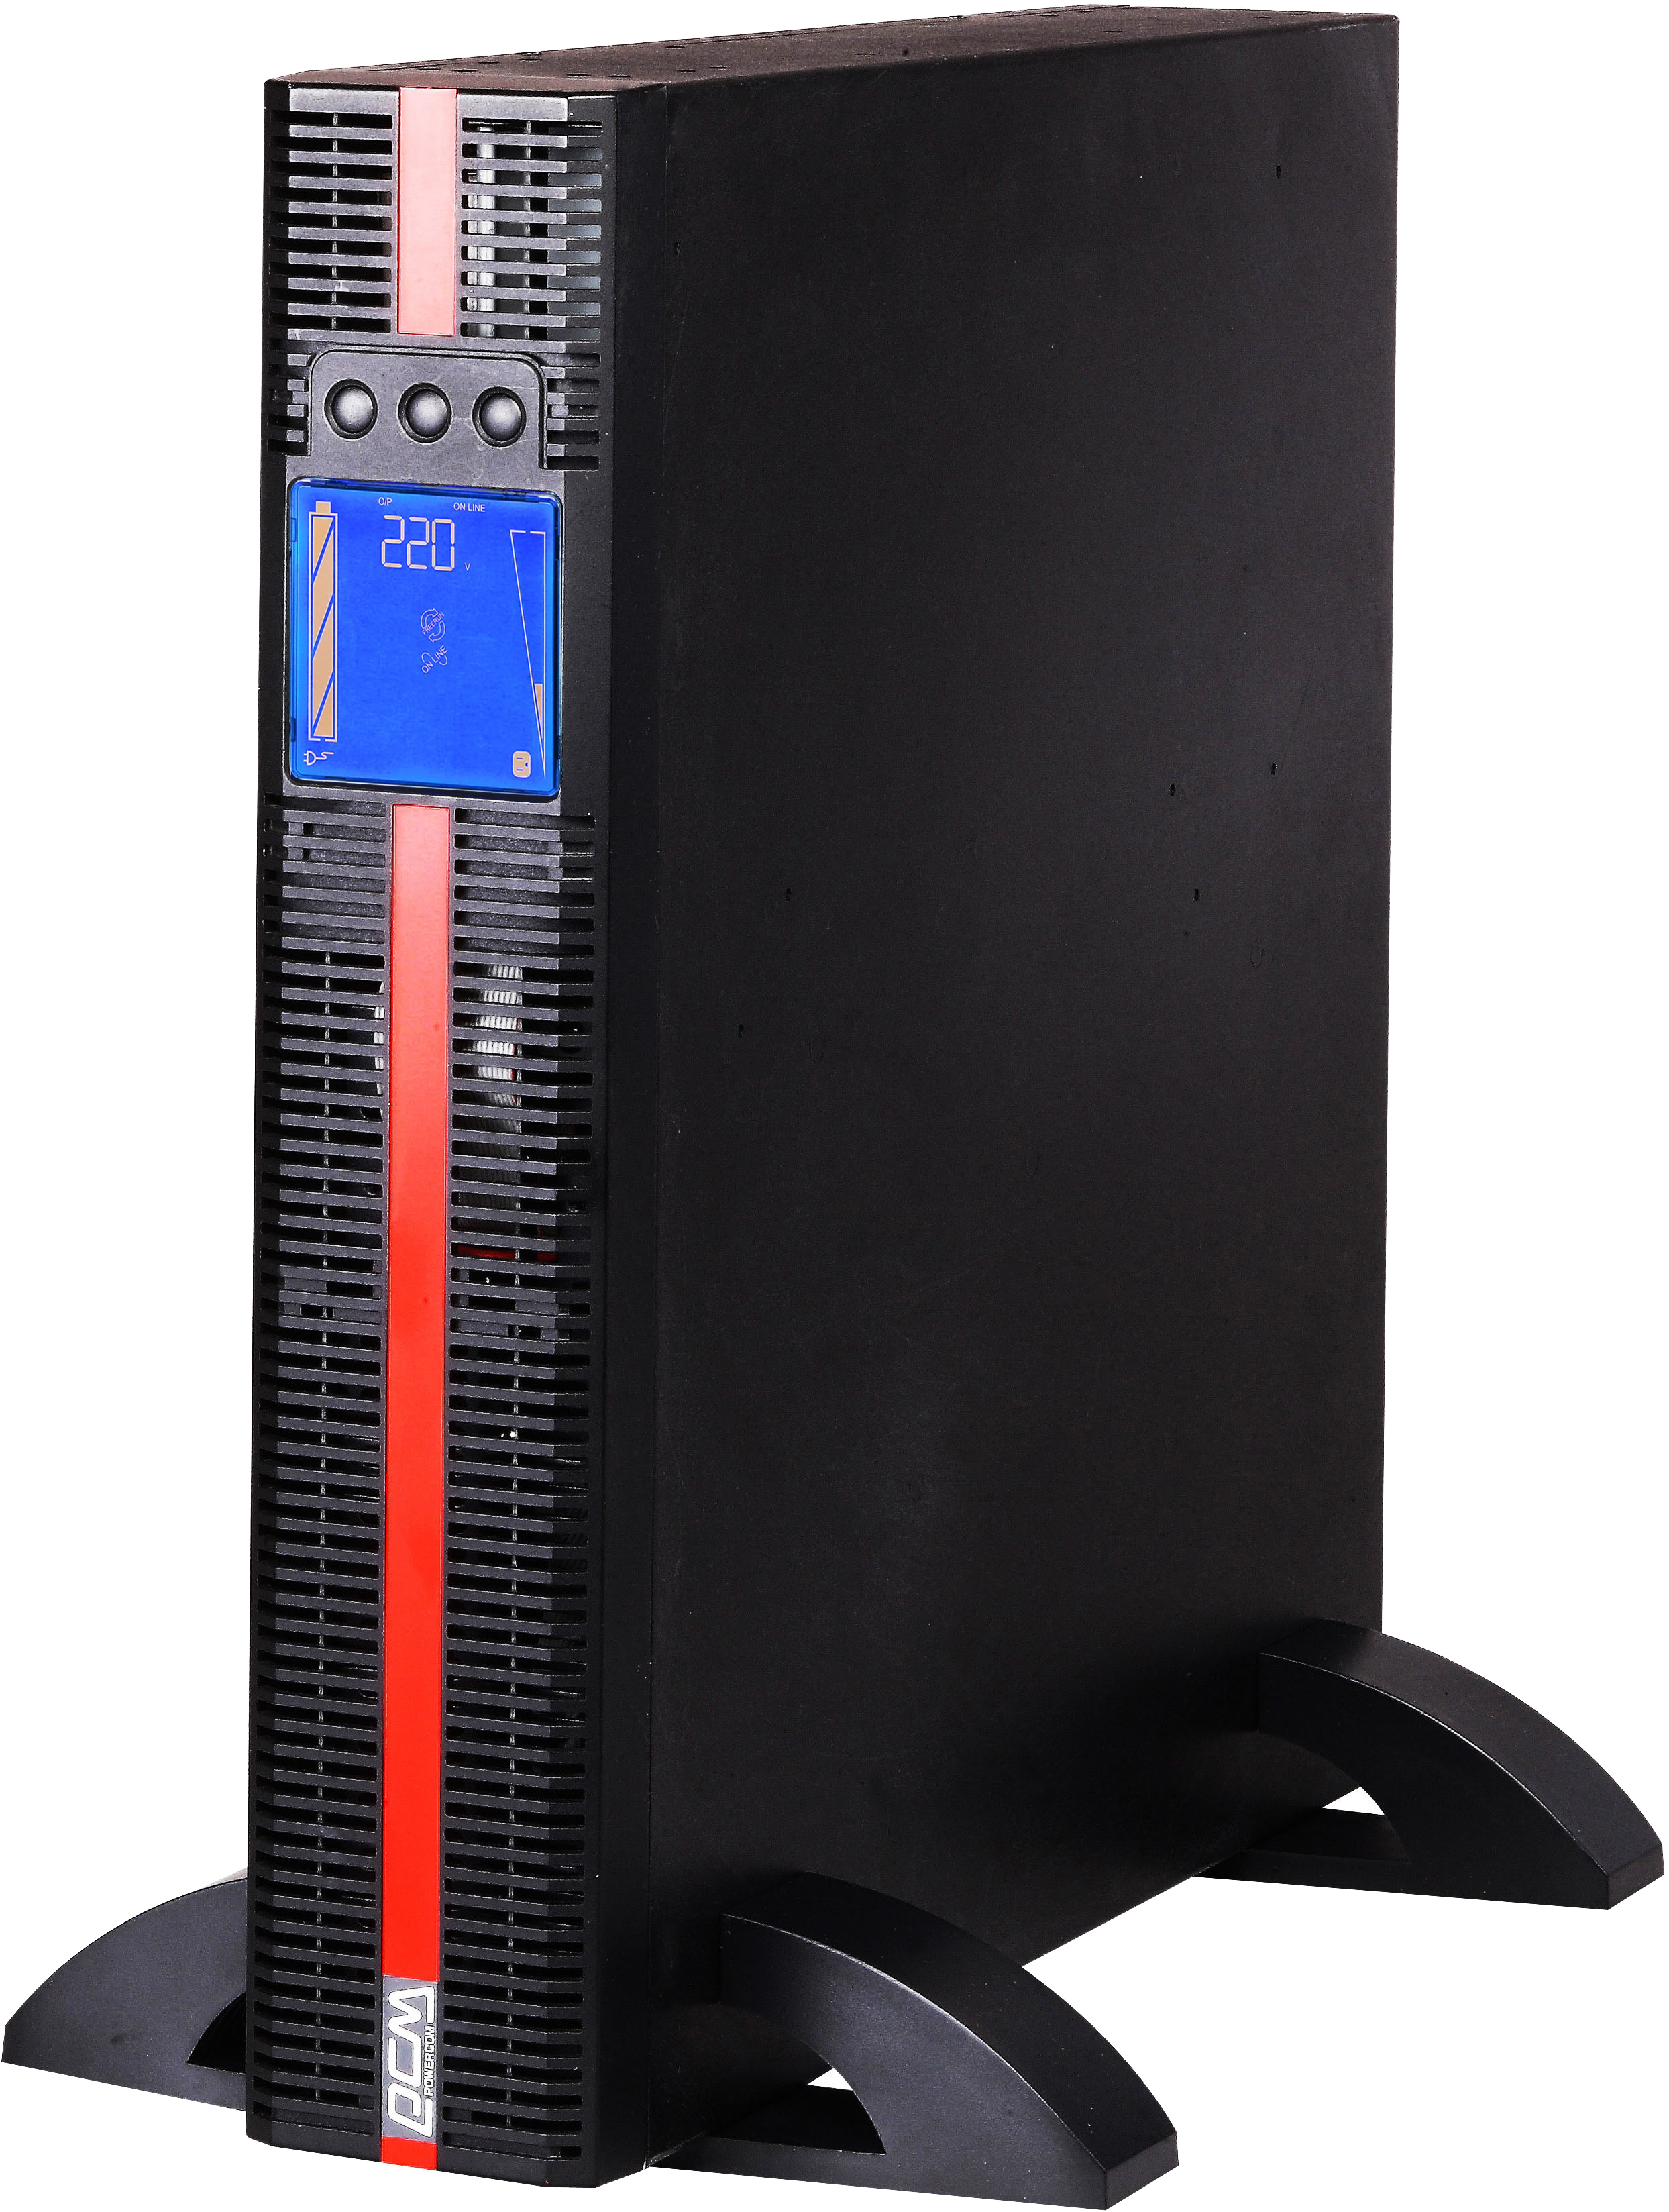 Источник бесперебойного питания Powercom MRT-1500 IEC 1500VA PF=1 online RS232 USB 4 IEC LCD